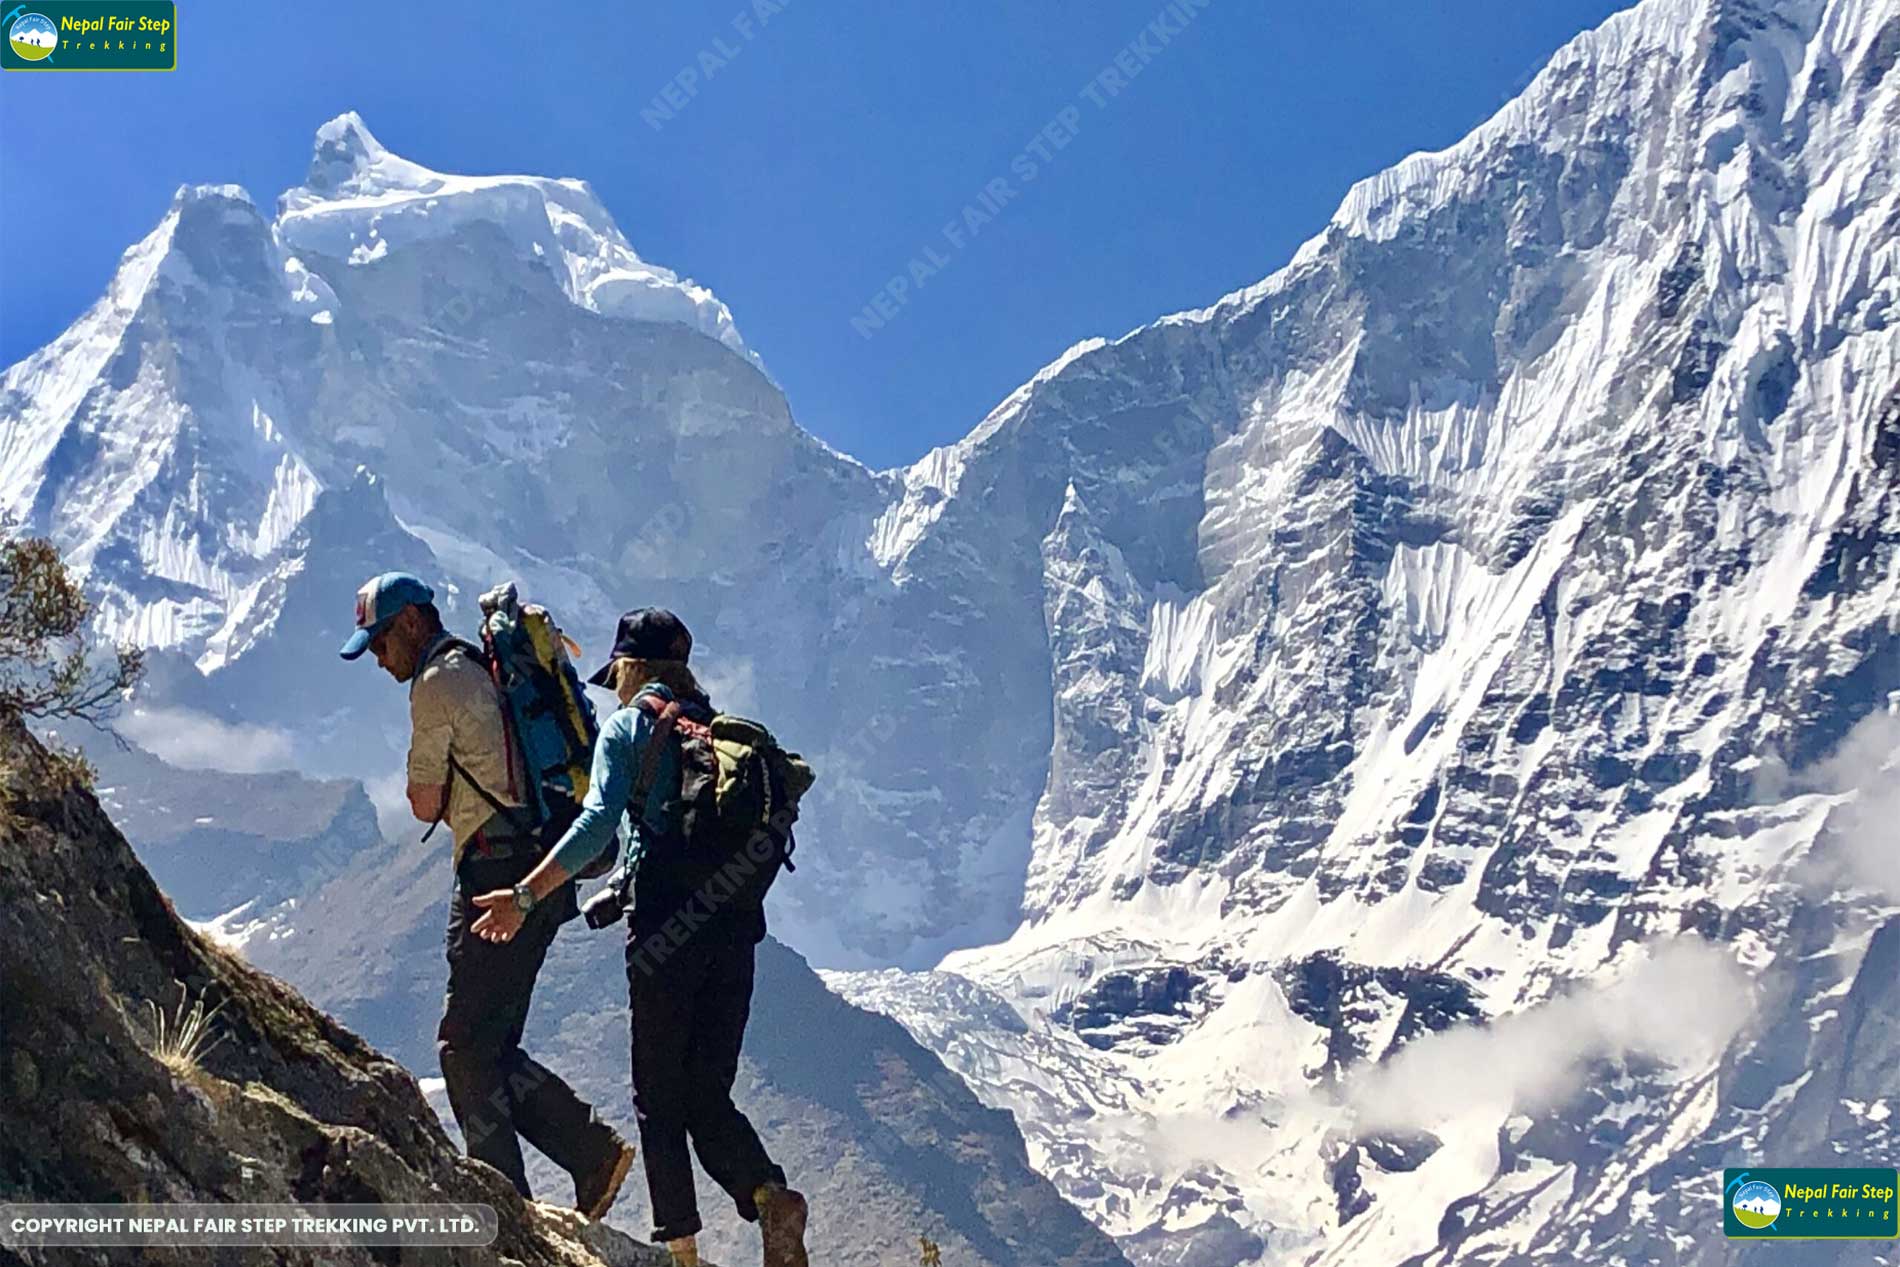 Nepal Fair step trekking _trekking and hiking